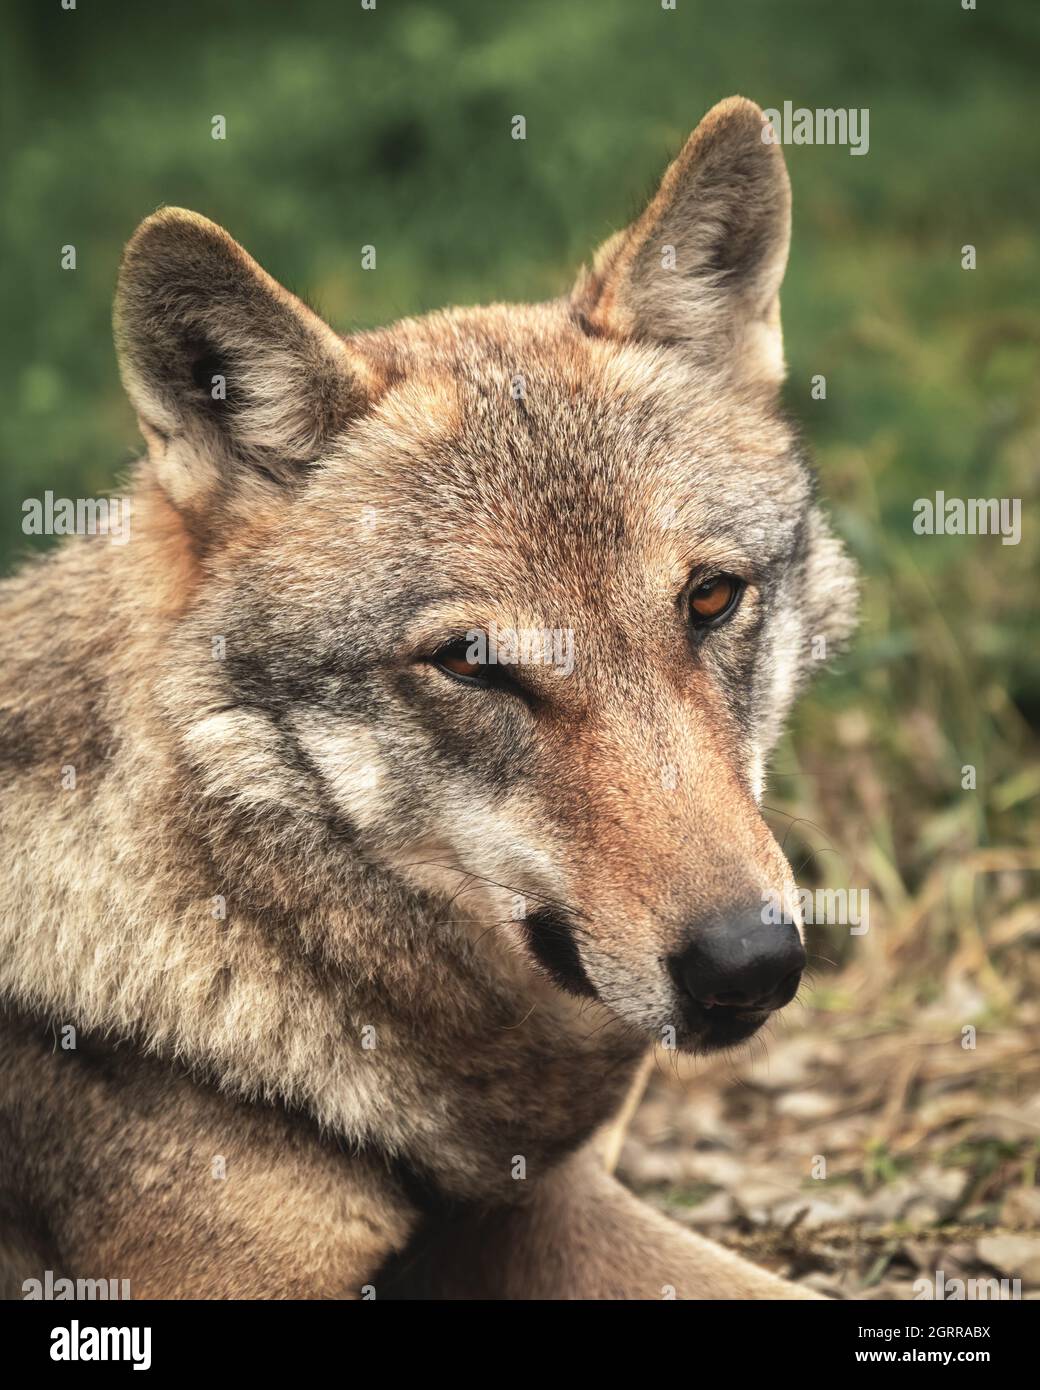 Gesichtsporträt eines europäischen Wolfes, der direkt in die Kamera schaut. Tierfotografie Stockfoto